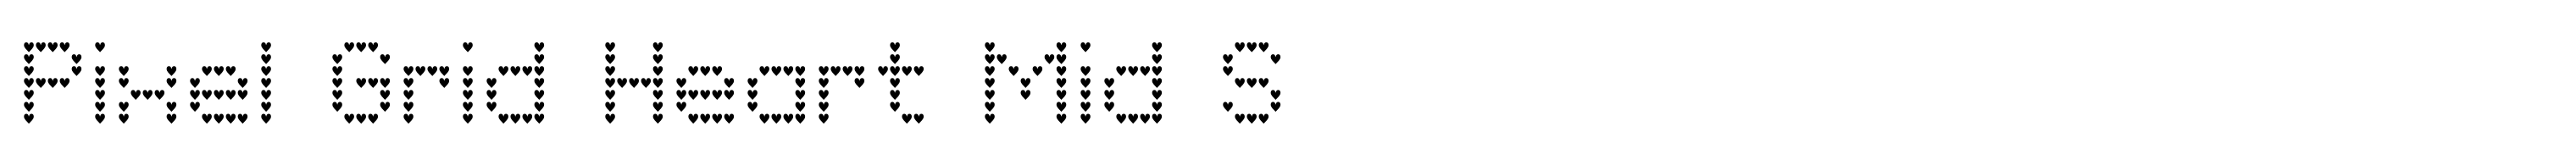 Pixel Grid Heart Mid S